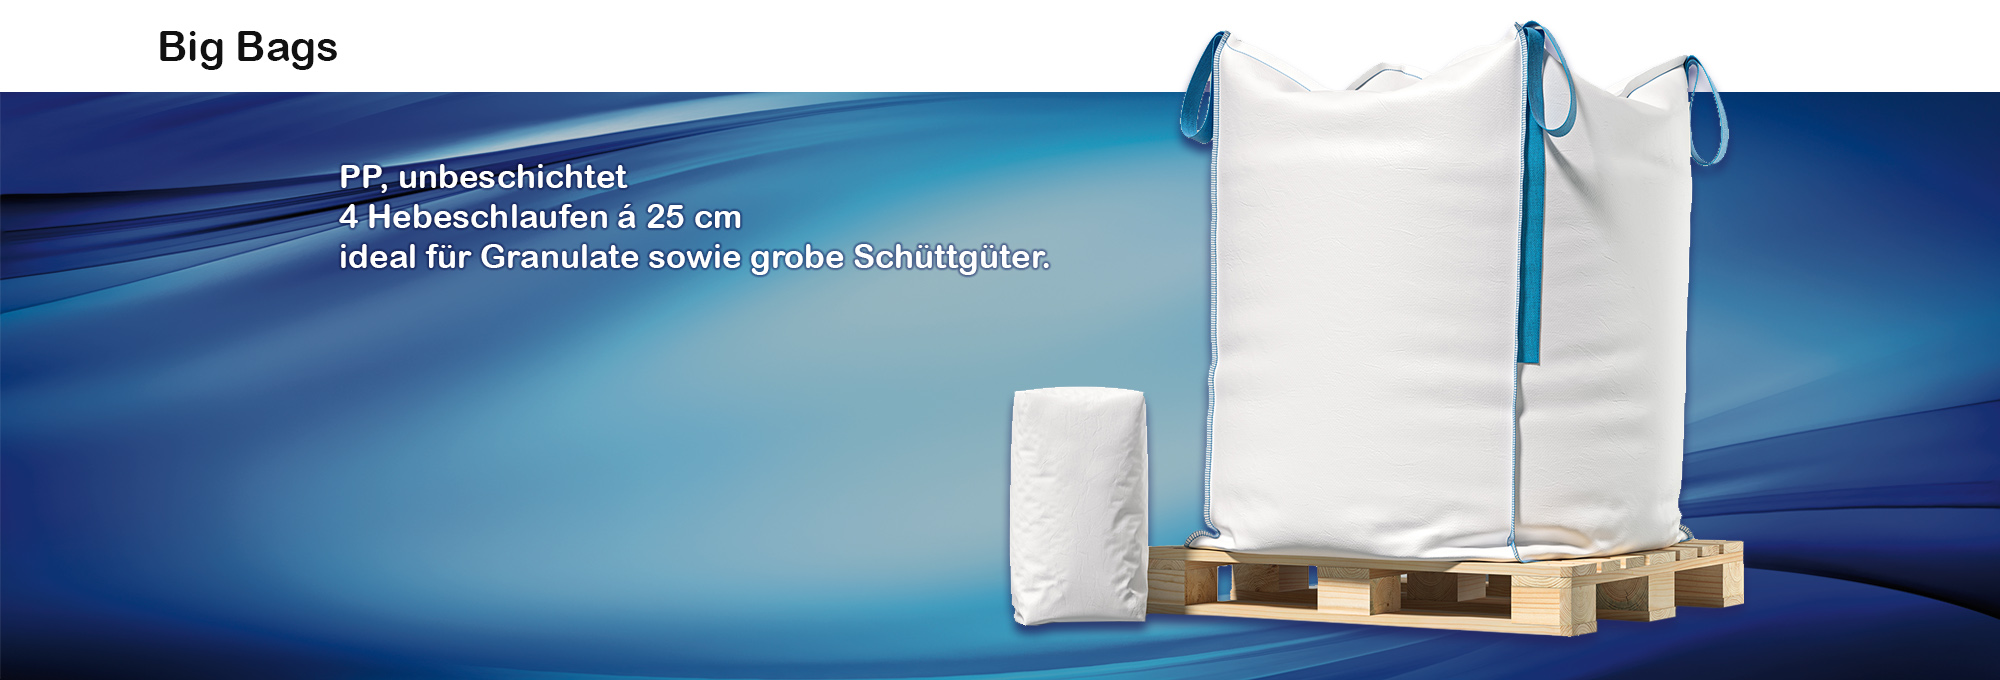 Austria Packaging Solution Industrie BigBags